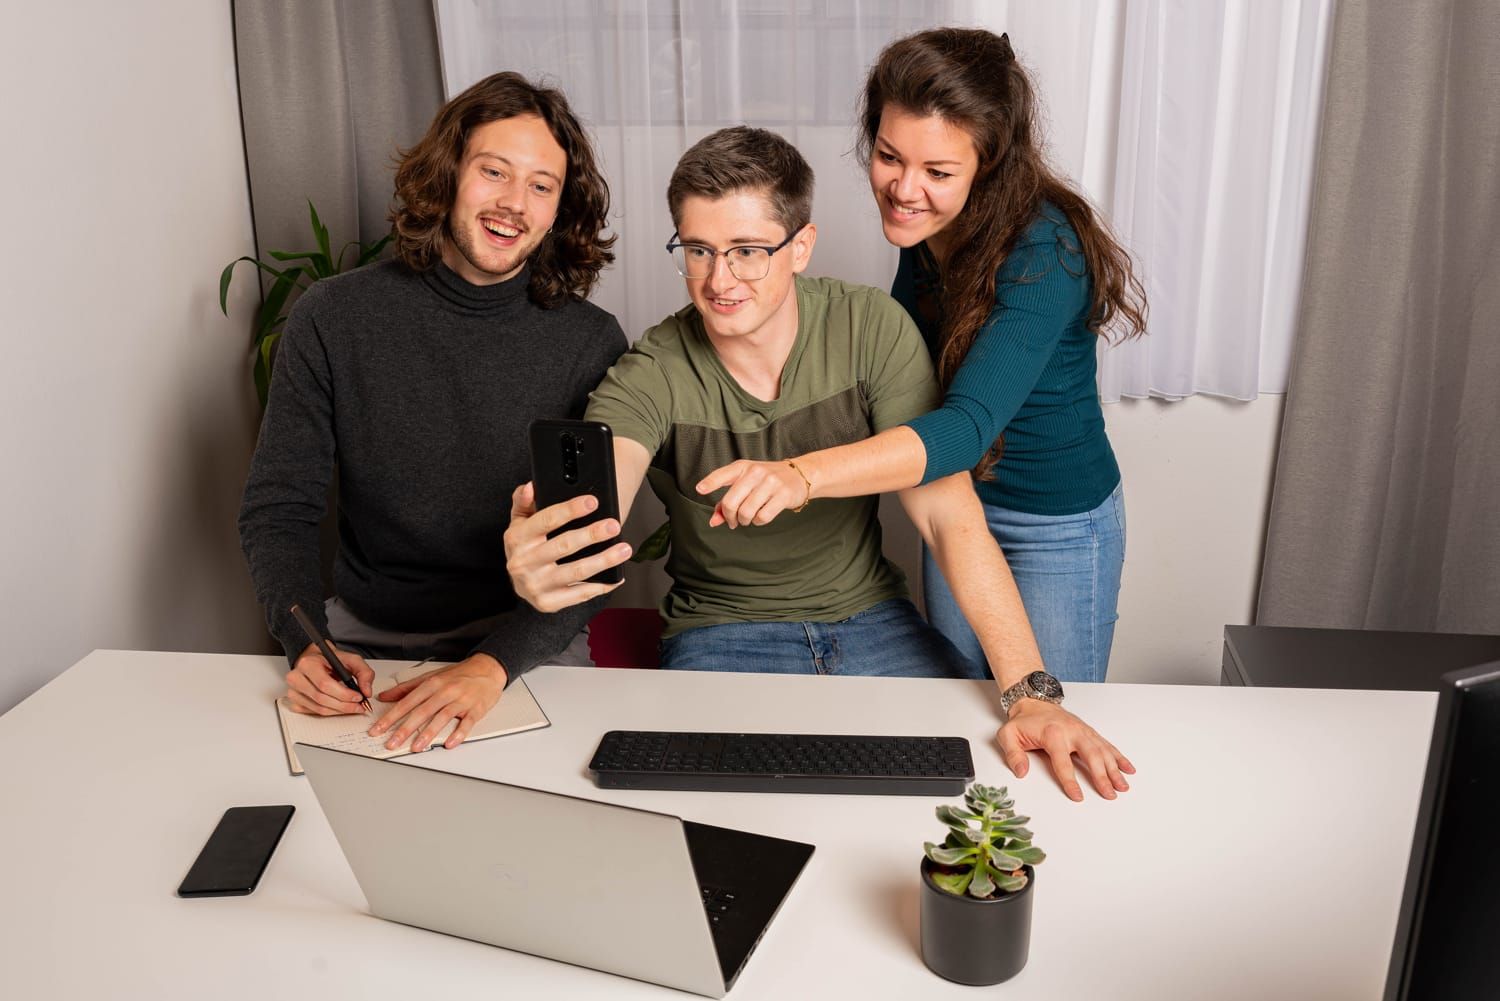 Teamfoto CodingBase, 3 Personen lachend auf ein Handy blickend und vor einem Laptop sitzend